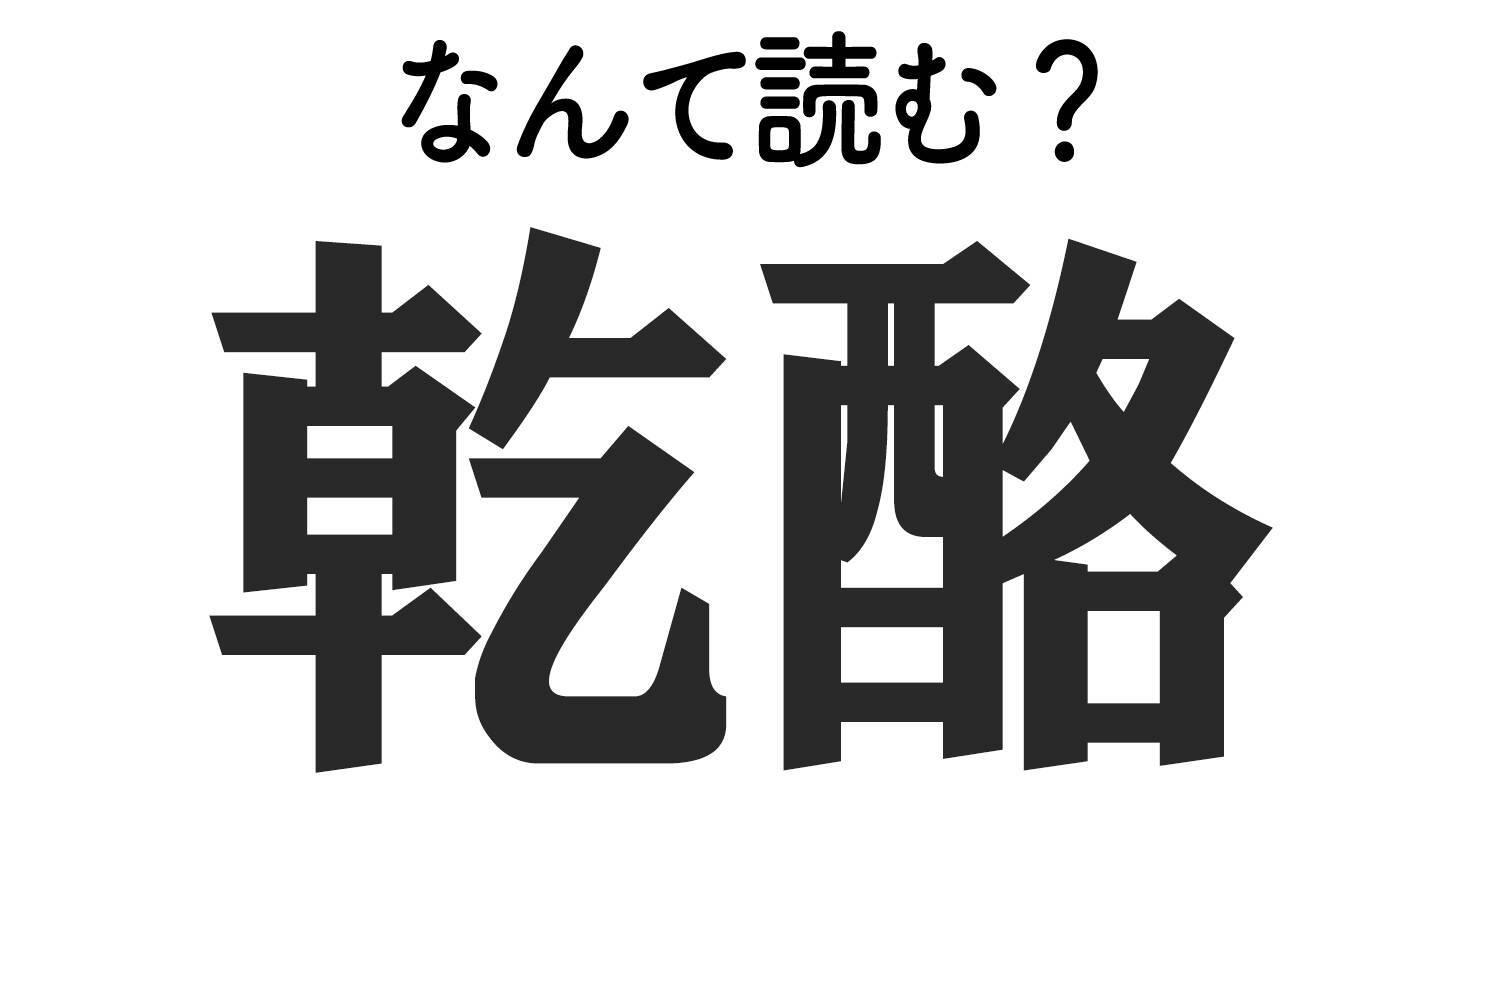 乾酪 はなんて読む 難読漢字クイズ 2019年12月21日